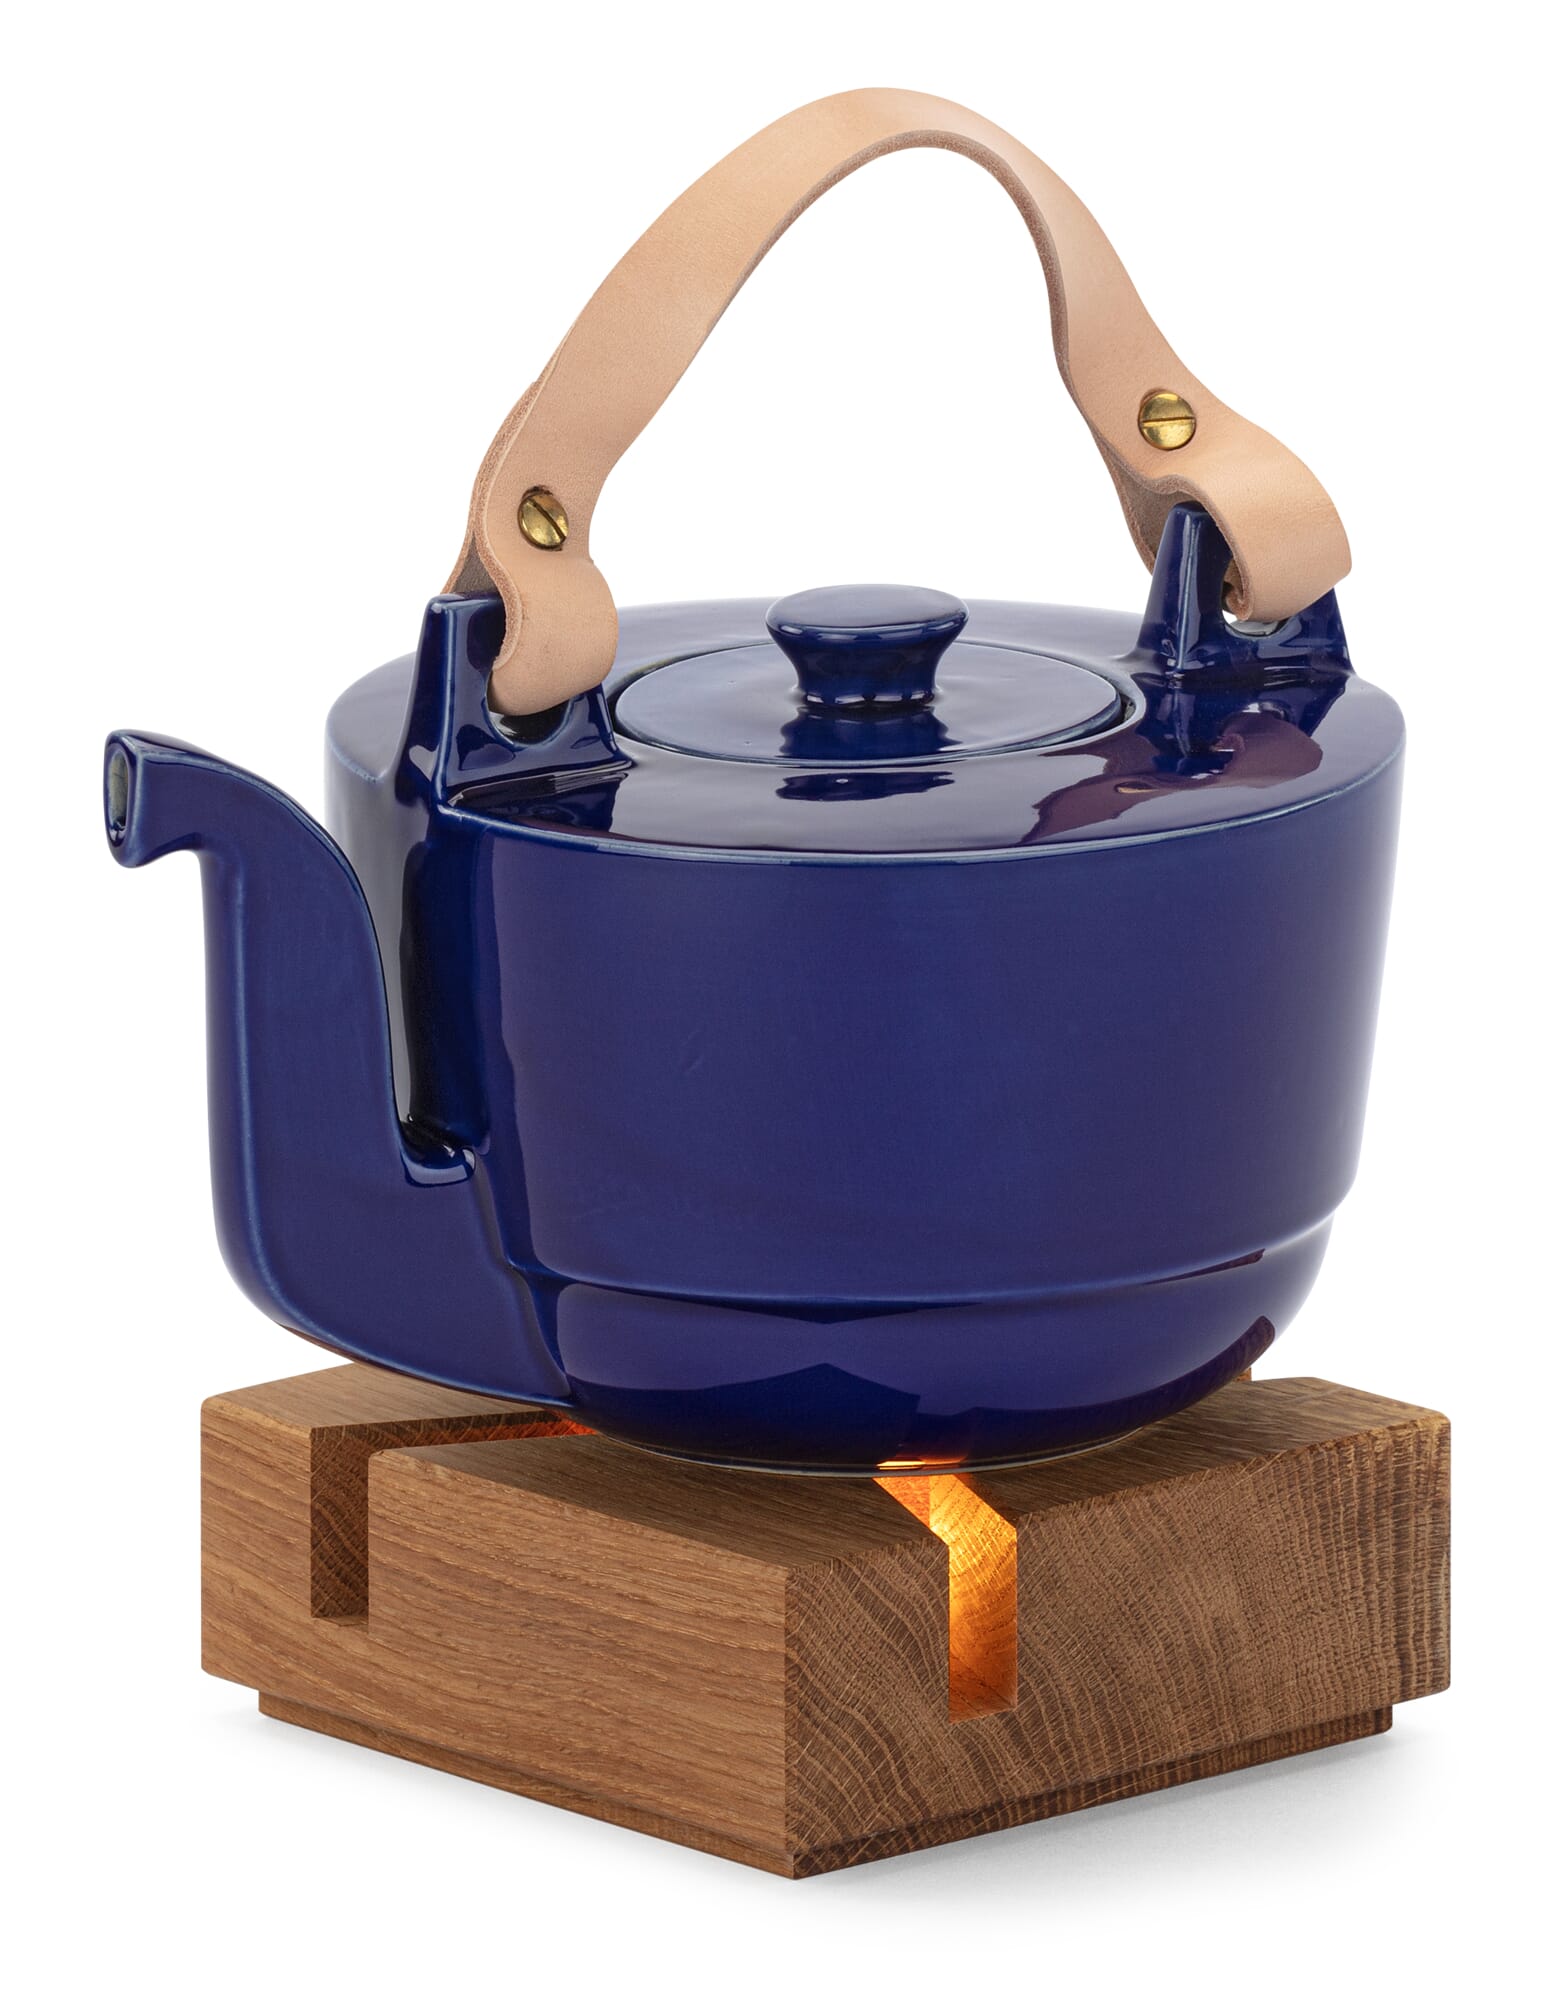 https://assets.manufactum.de/p/022/022101/22101_03.jpg/teapot-warmer-oak.jpg